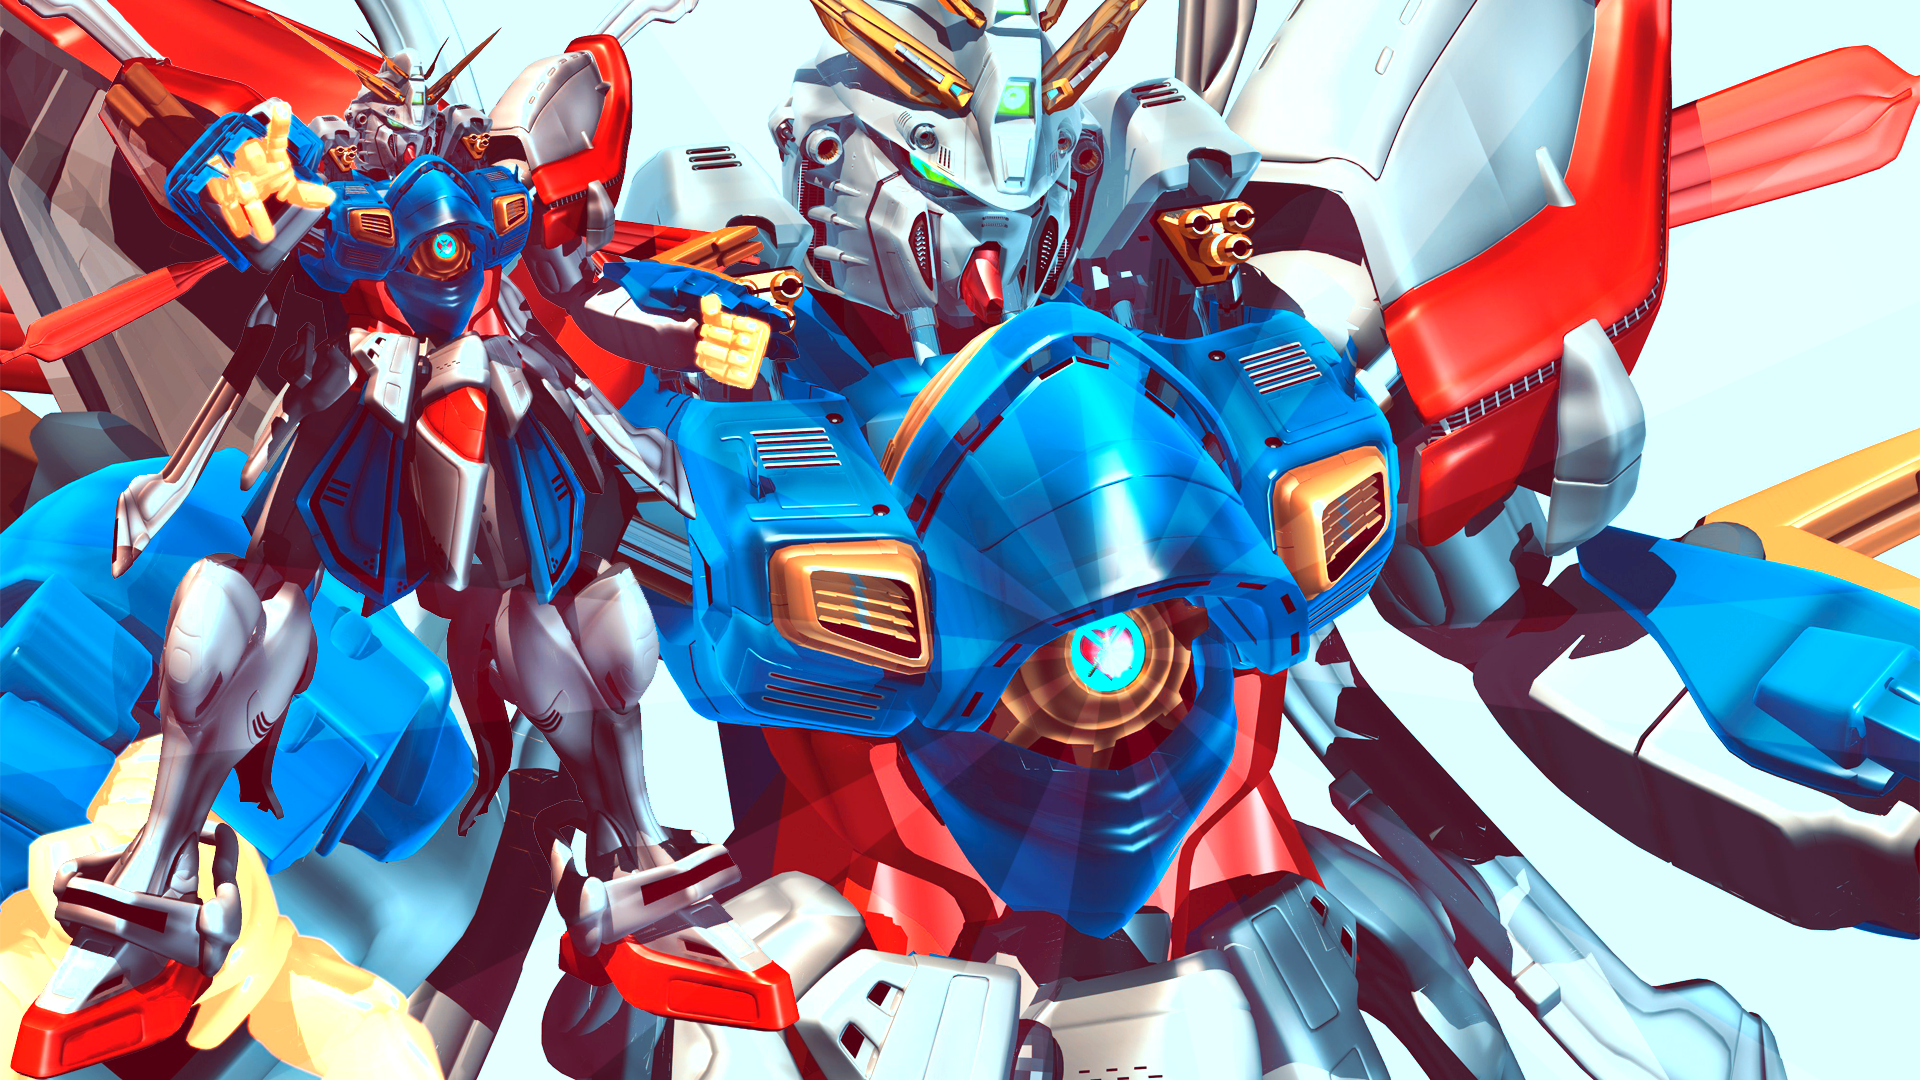 Gundam Wallpaper / WallpaperJam.com